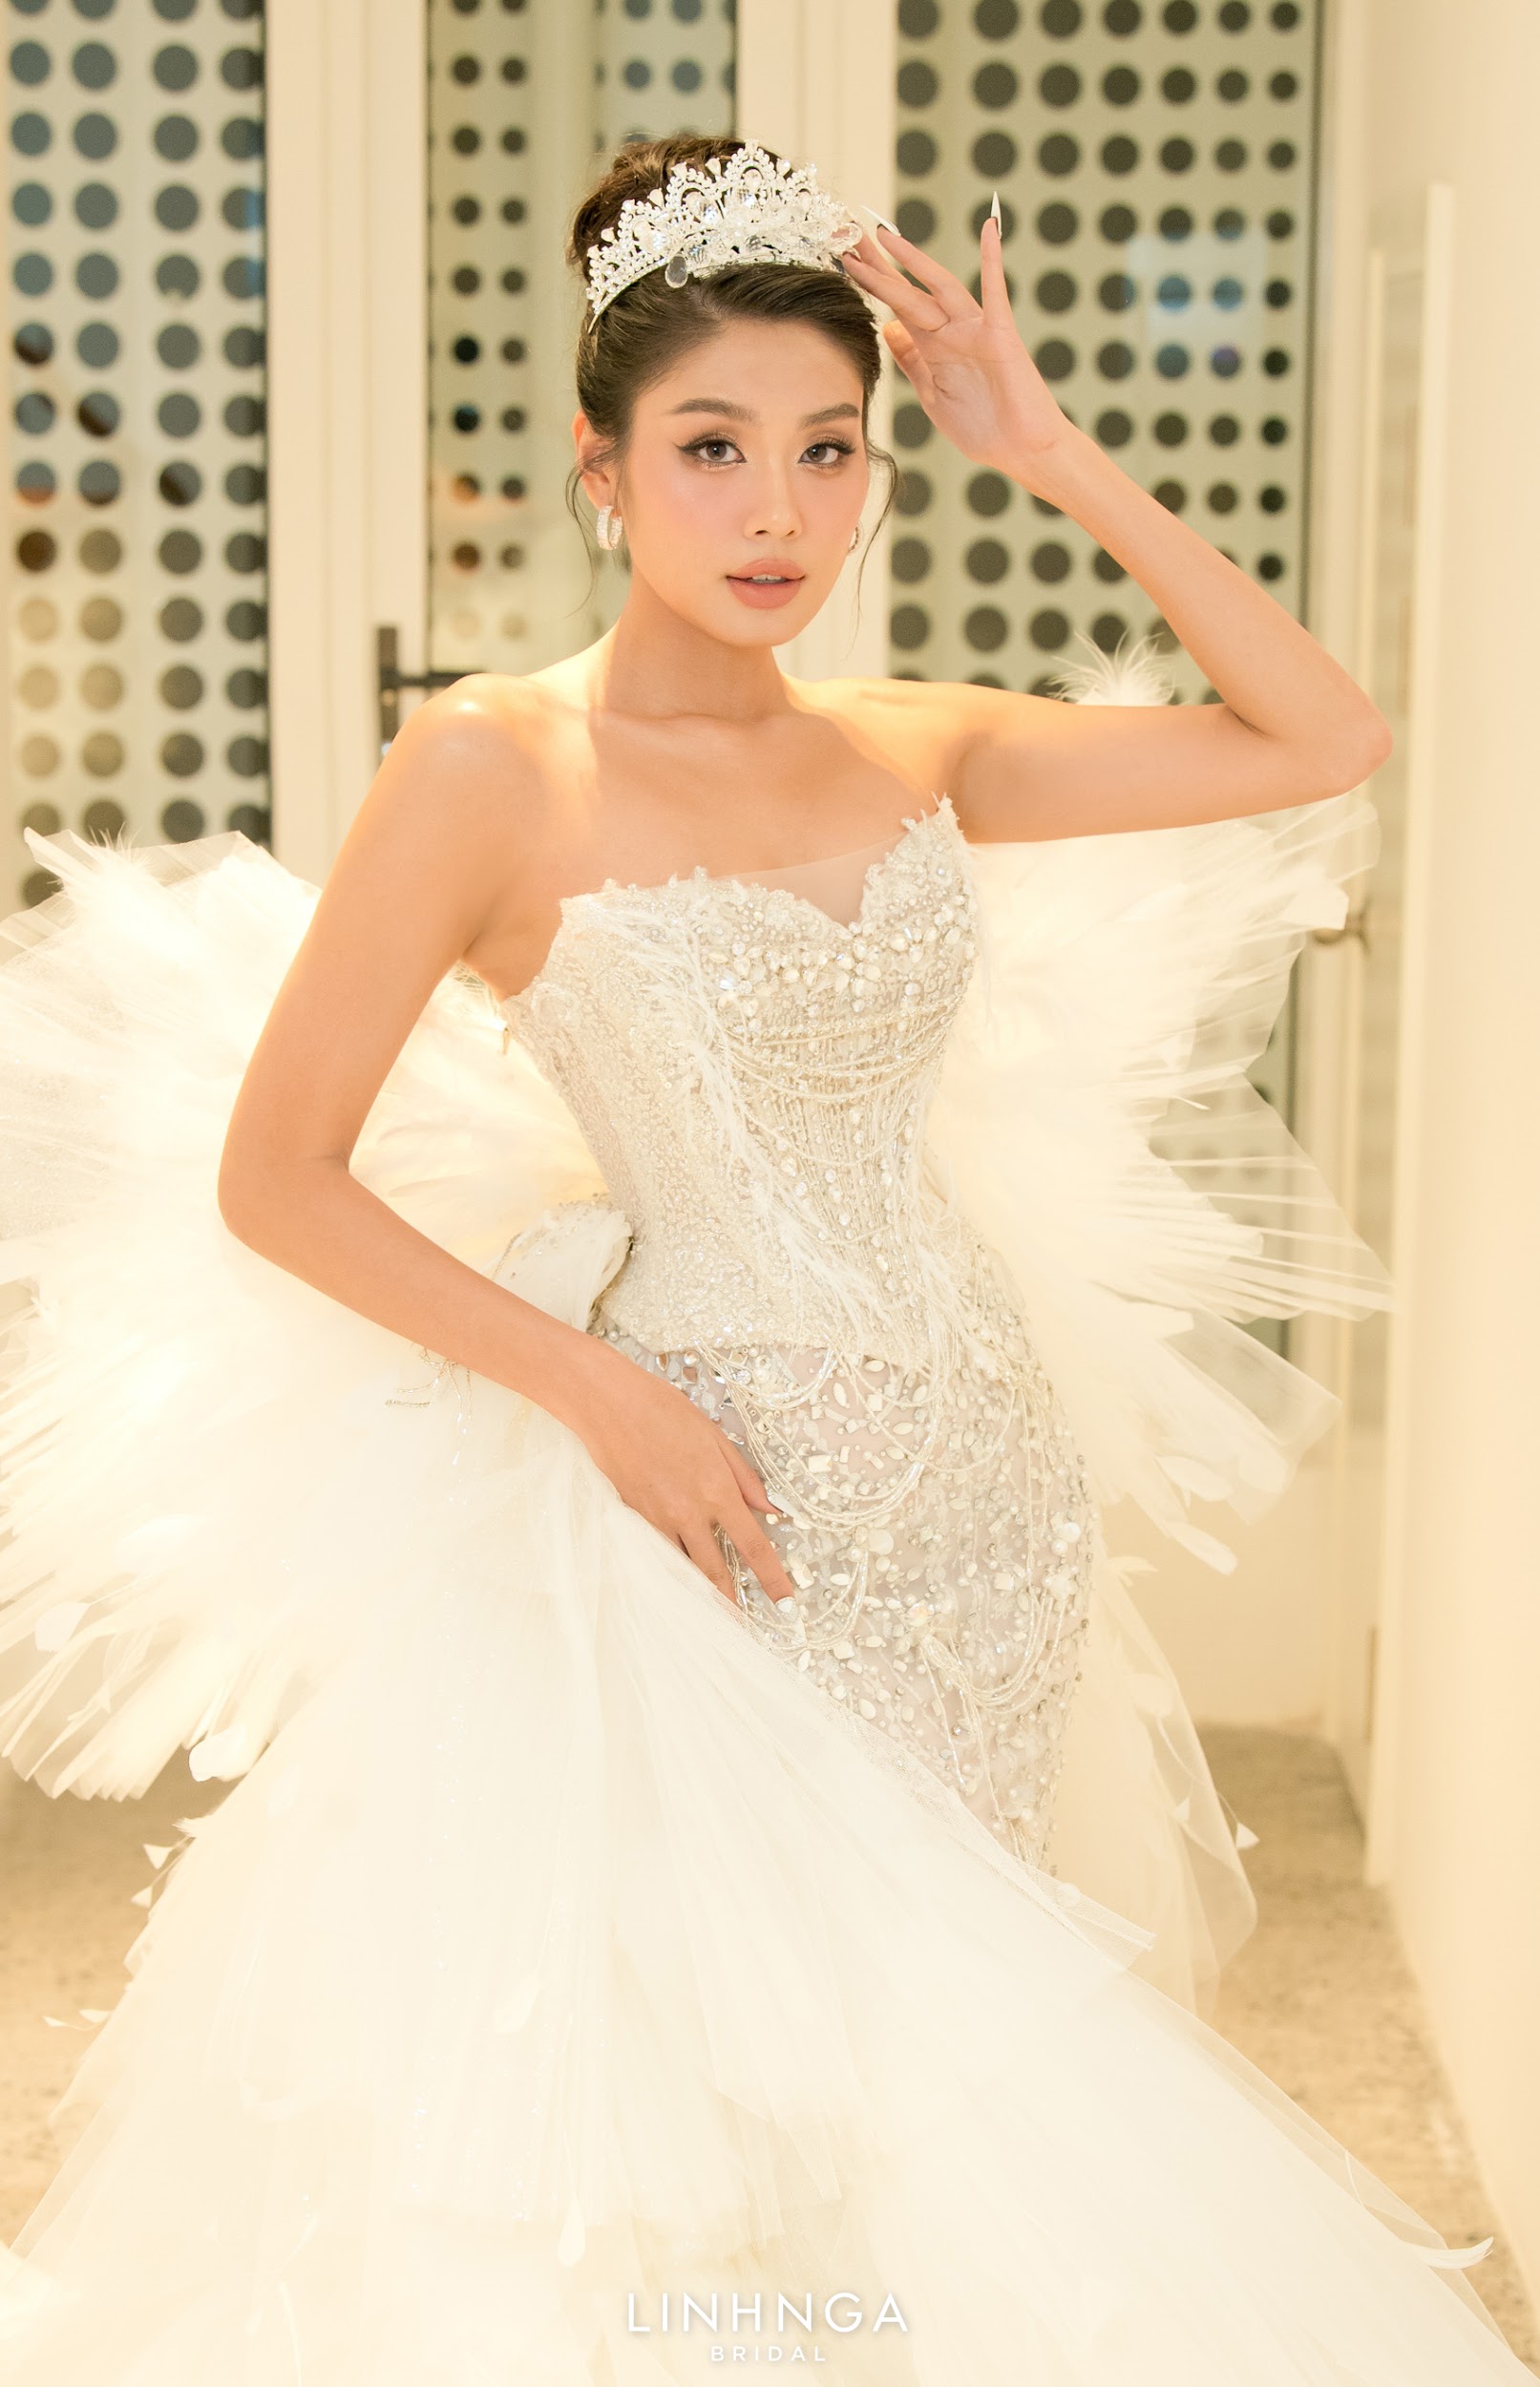 Hậu sinh nhật, Á hậu Thảo Nhi Lê hoá nữ hoàng lộng lẫy trở thành First Face cho show diễn thời trang cưới - ảnh 1